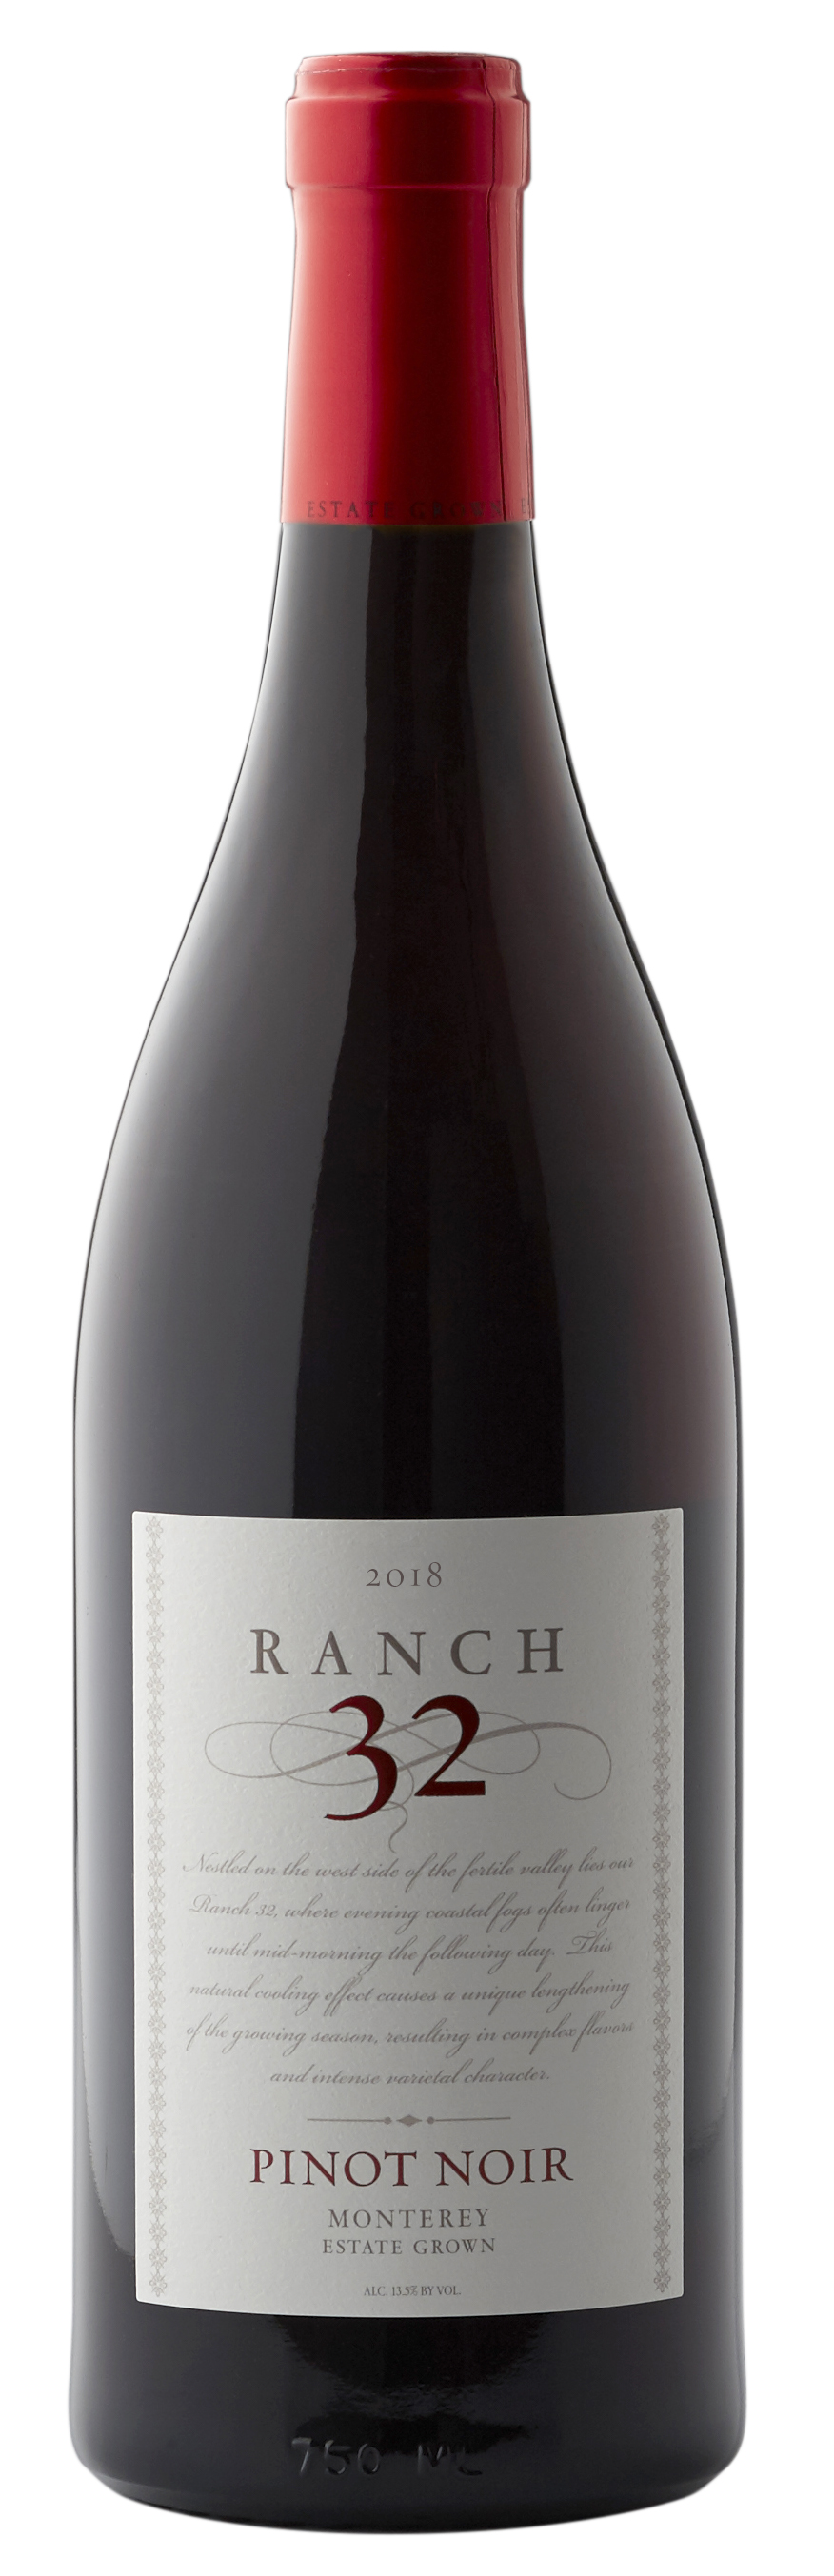 Ranch 32 Pinot Noir 2018 750ml